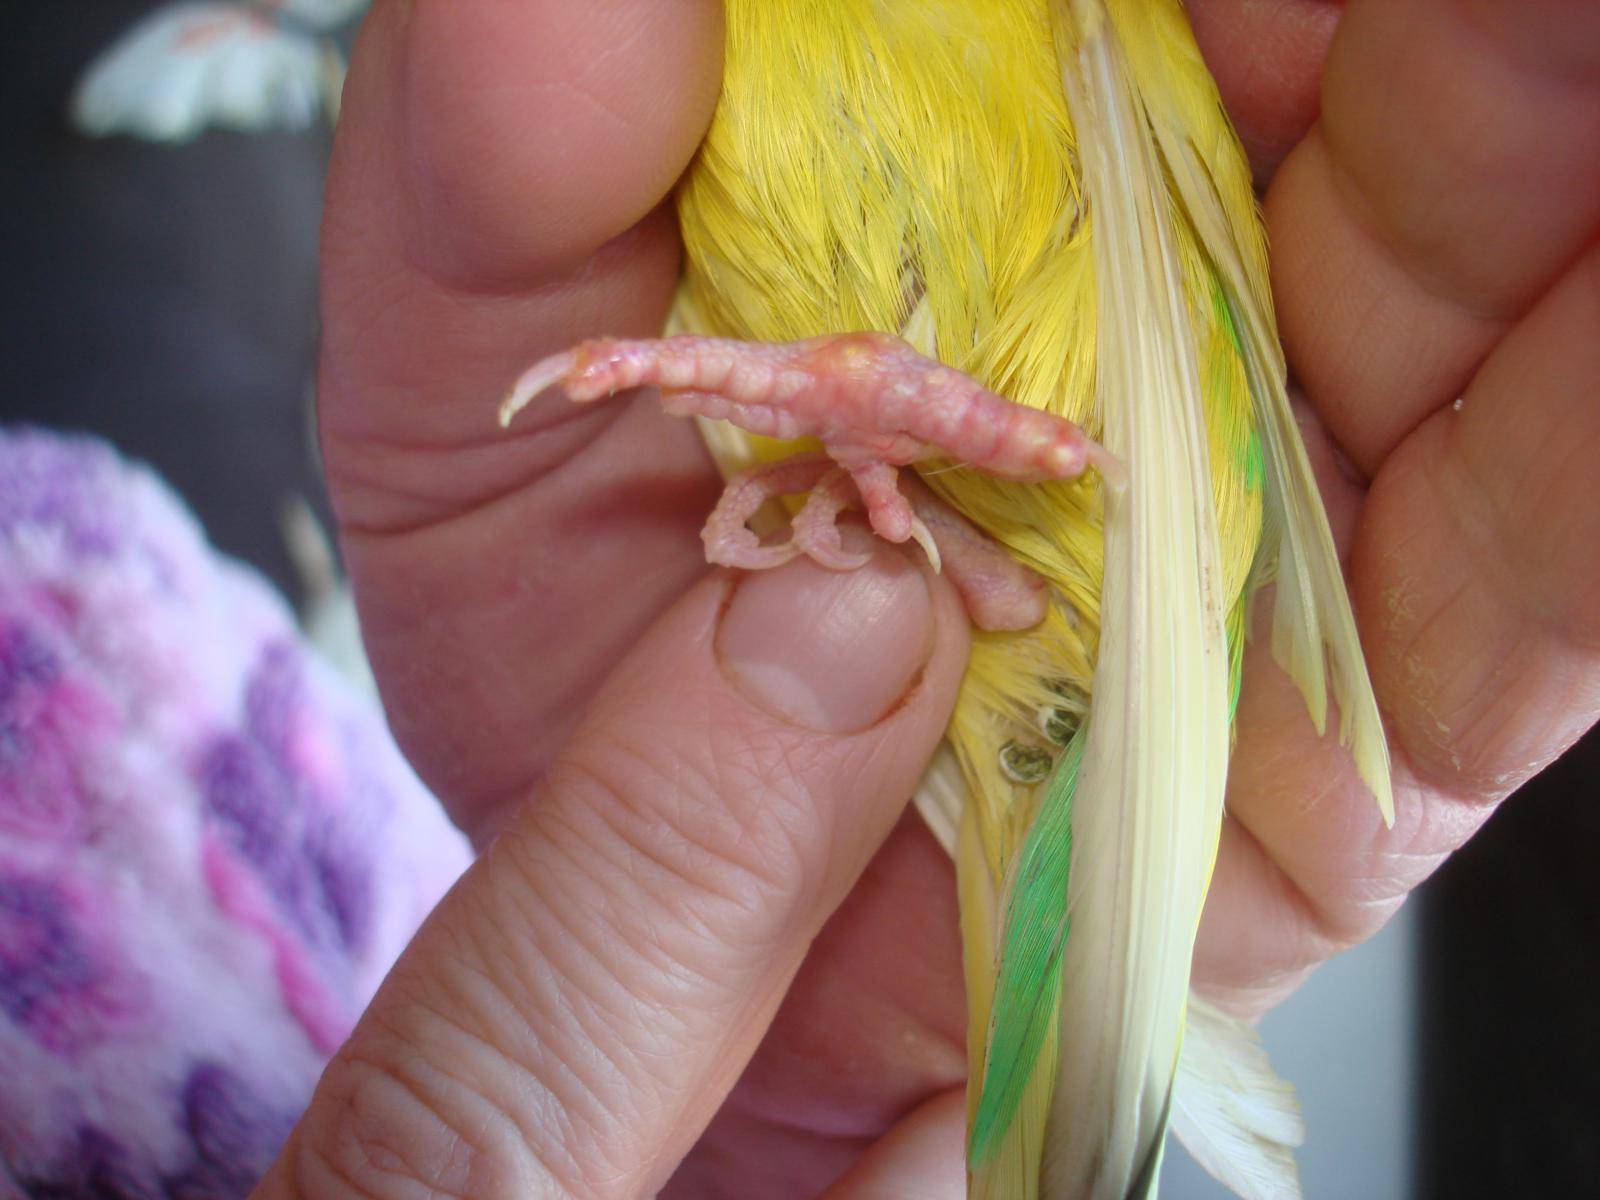 Почему попугай дрожит и хохлится: выяснение причин, диагностика и лечение